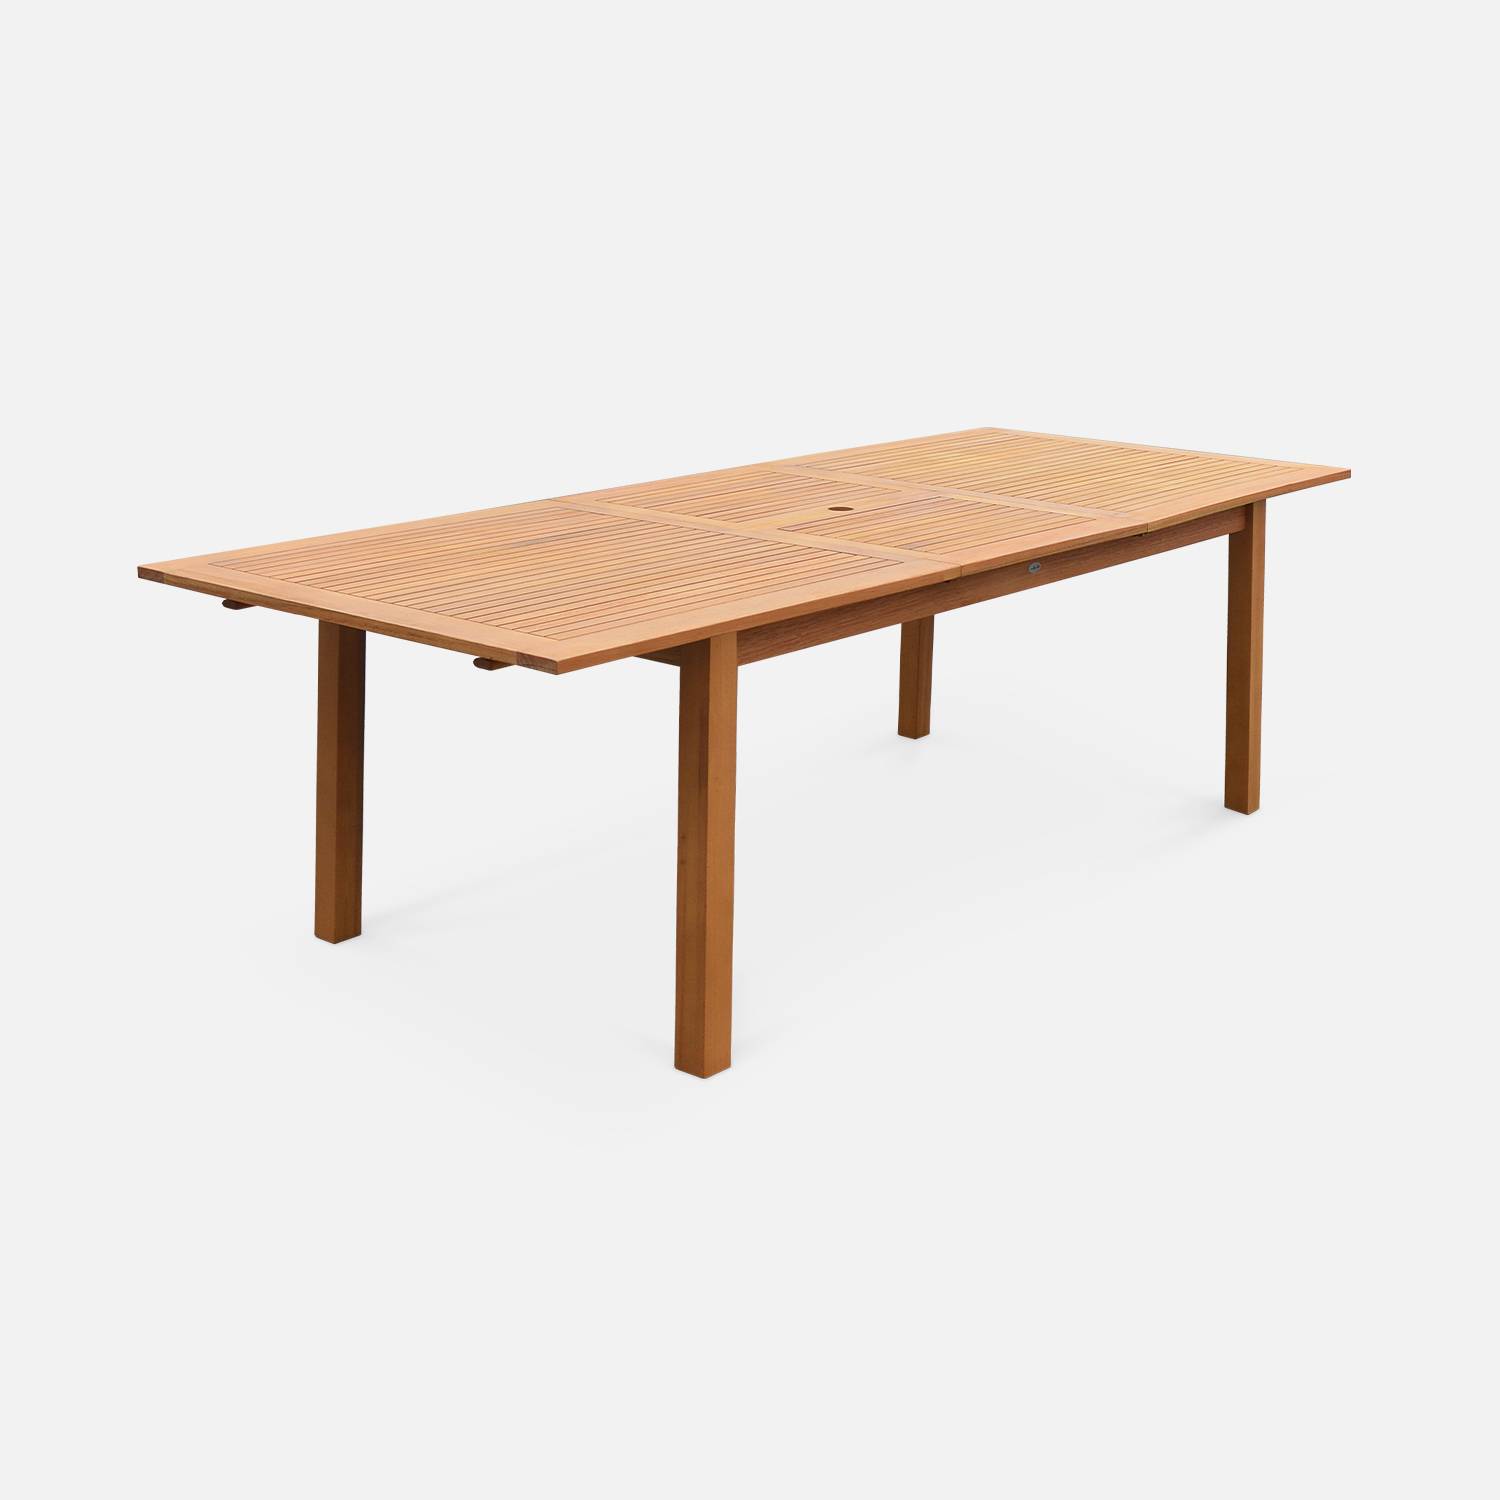 Tavolo da giardino, in legno, dimensioni: 180-240cm - modello: Almeria - Grande tavolo rettangolare con prolunga, in eucalipto FSC Photo4